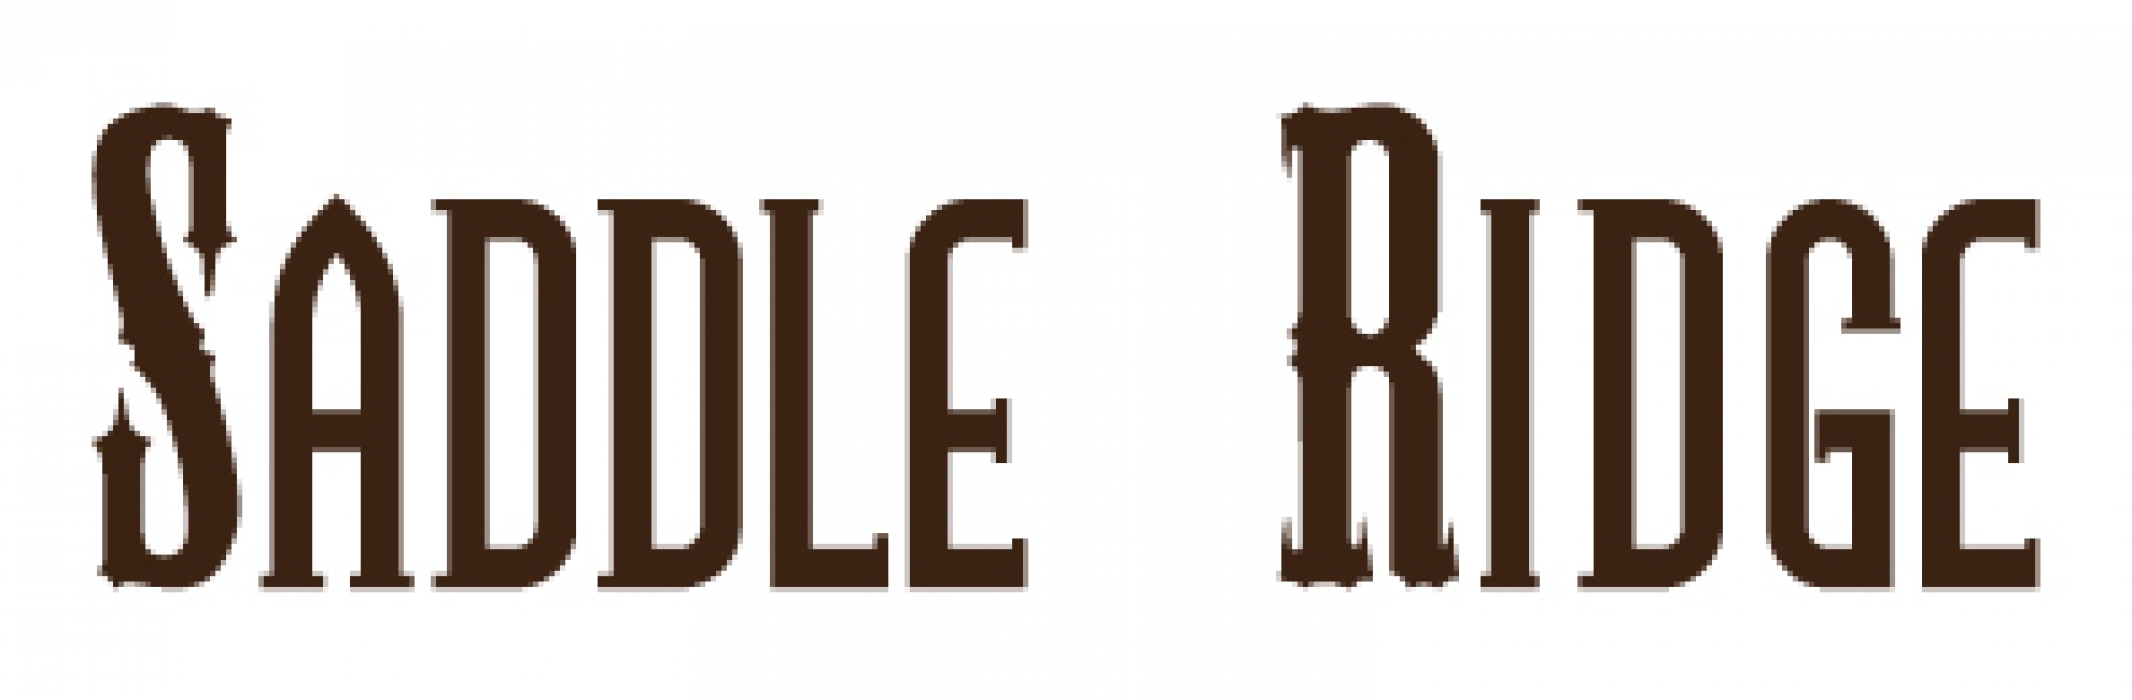 saddleridge logo